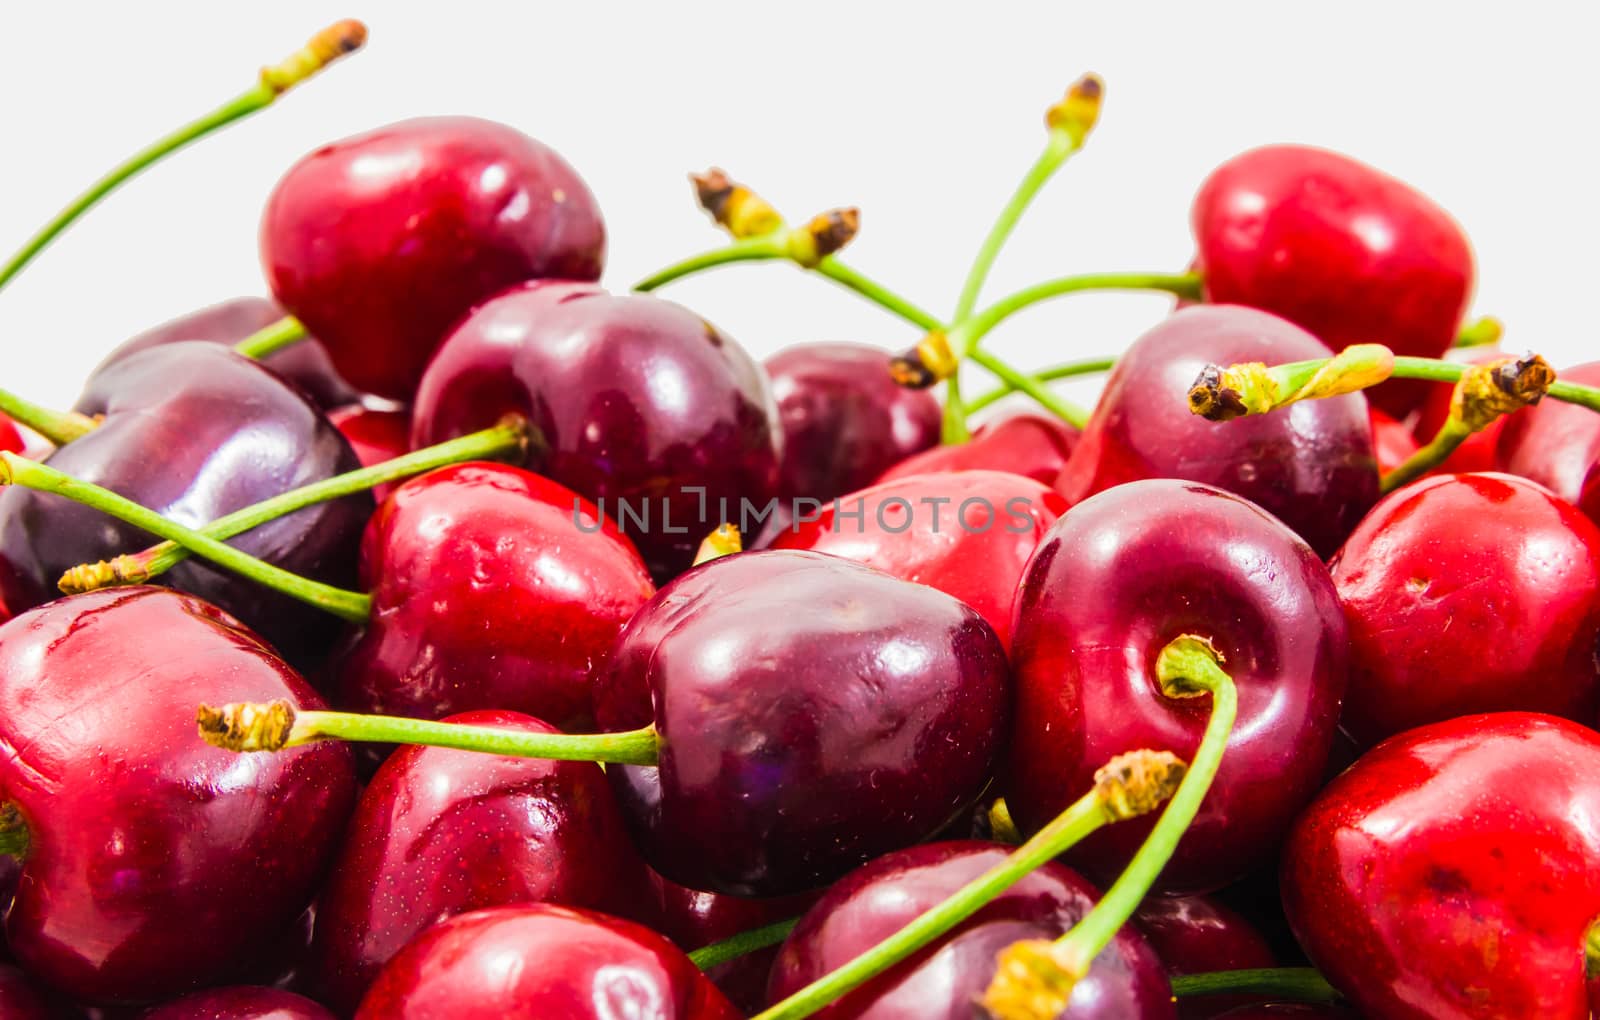 Wallpaper of fresh ripe red cherries.